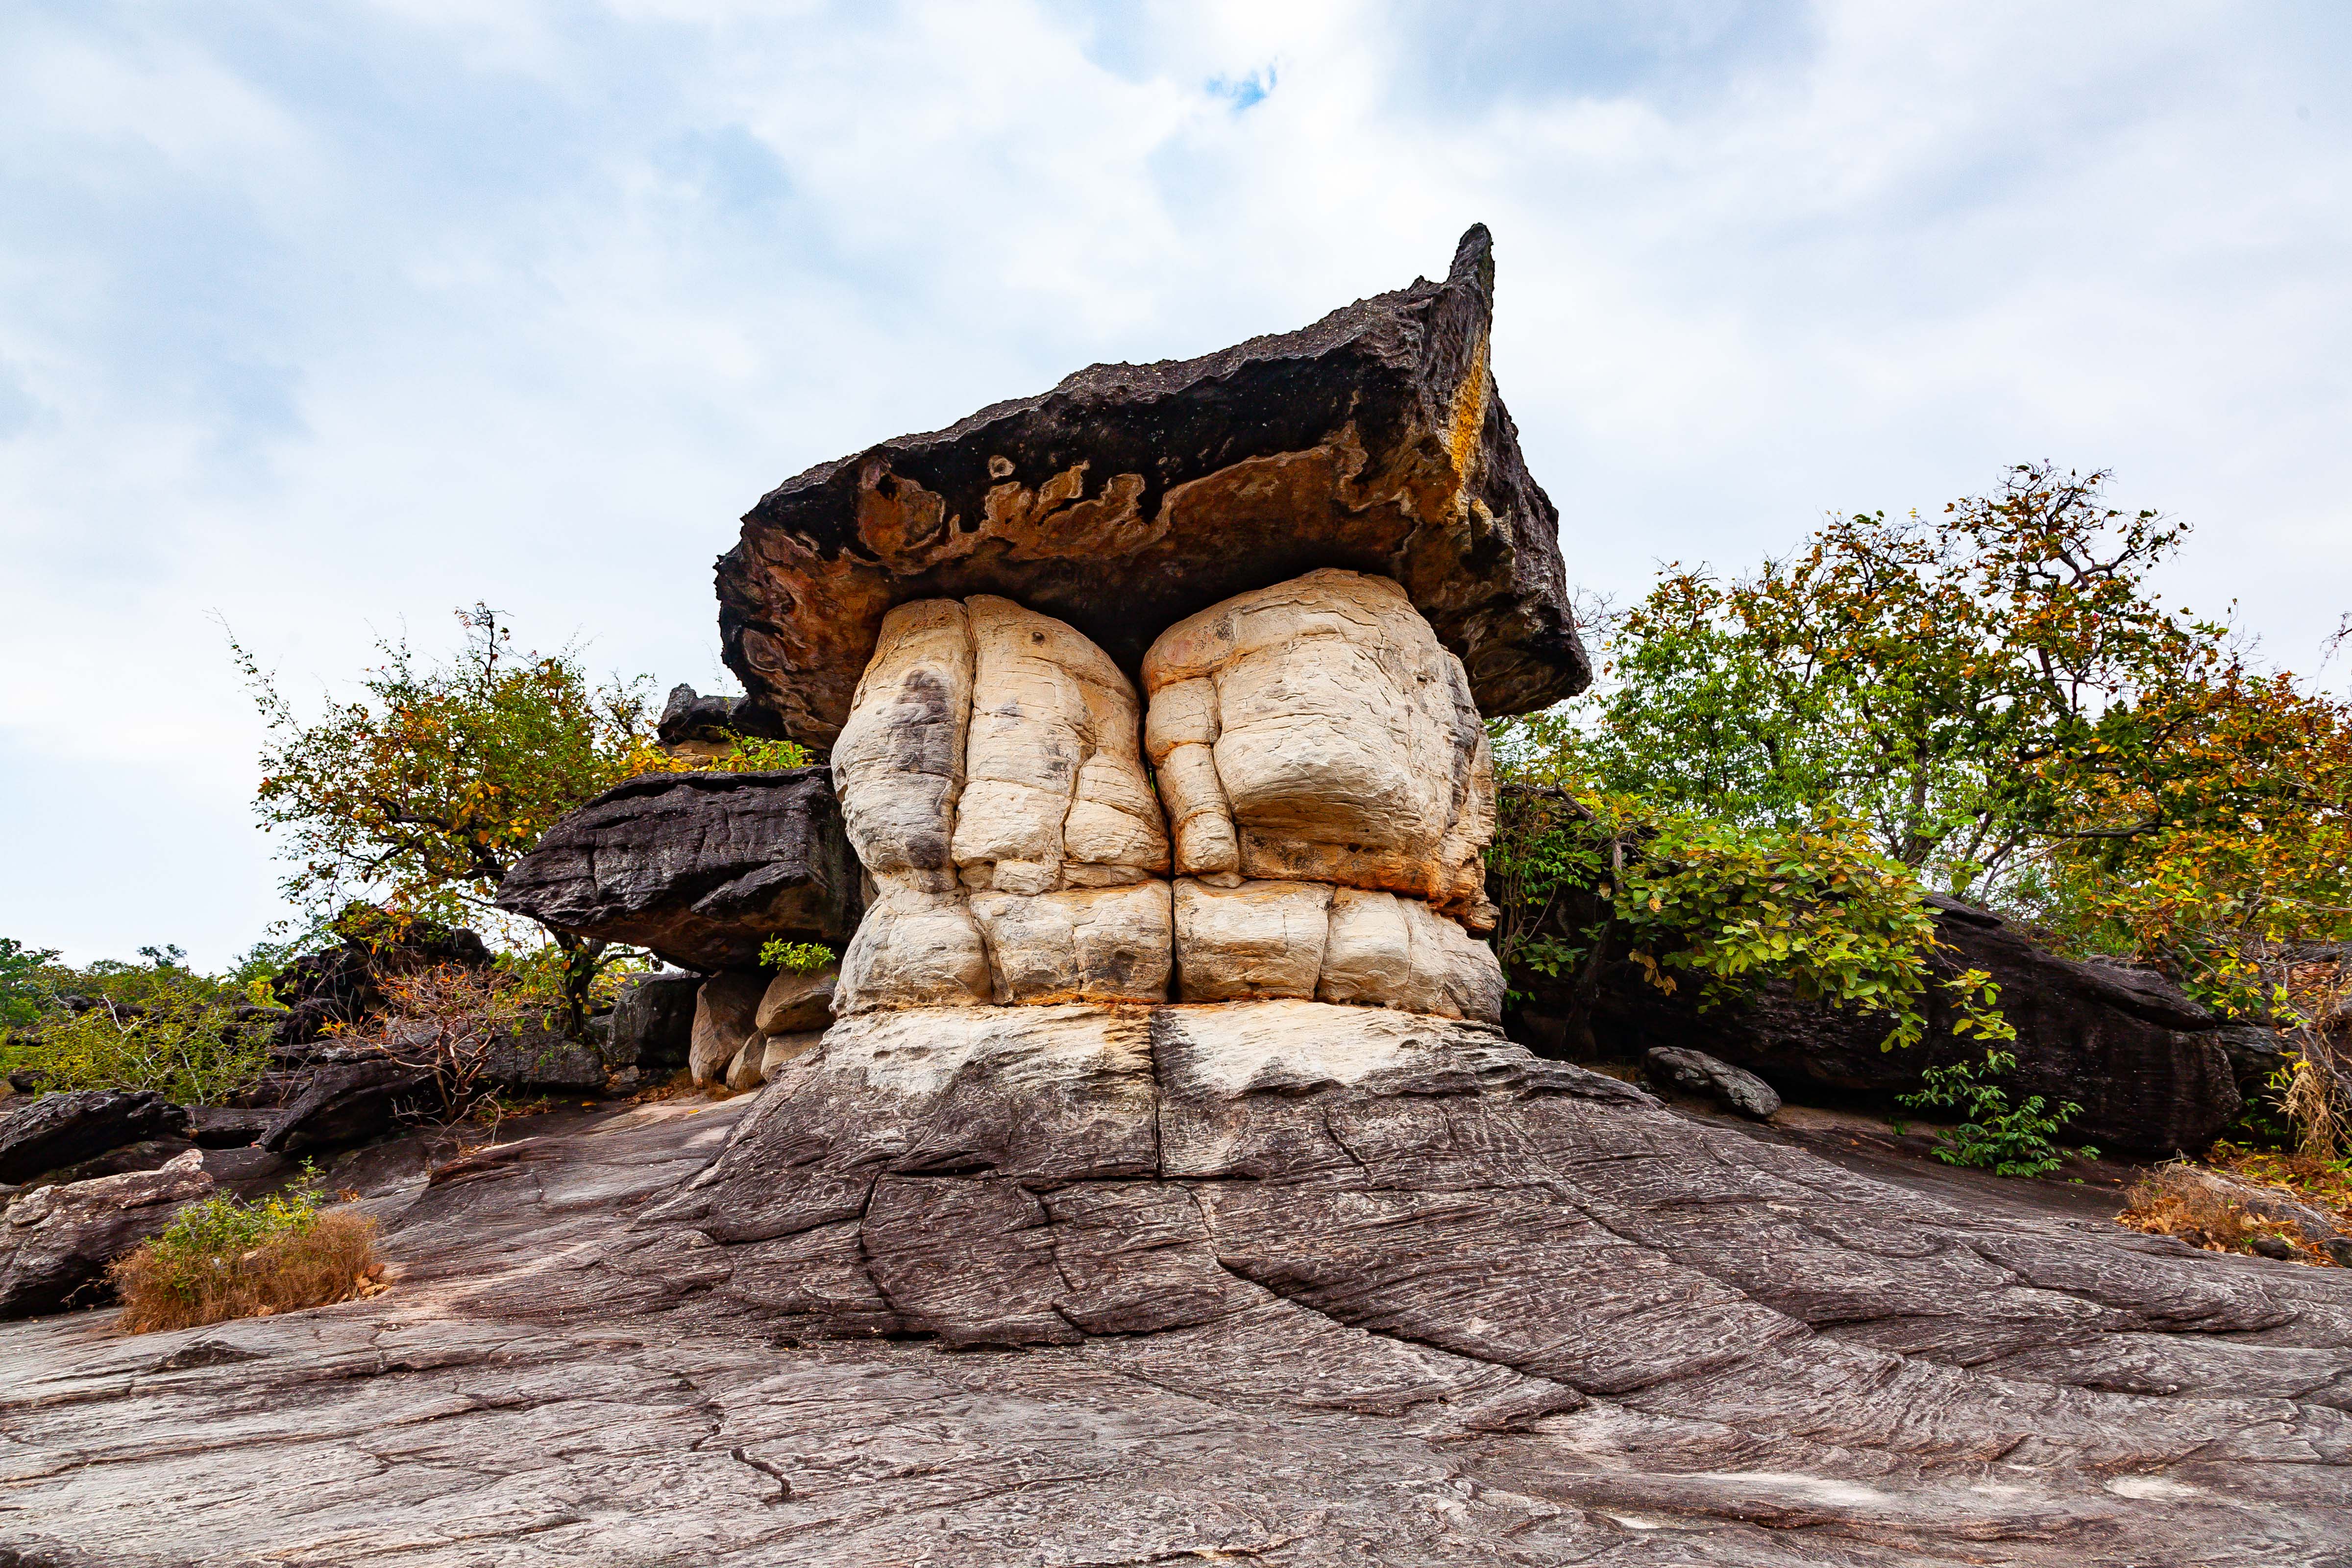 Thailand, Mukdahan Prov, Phuphathoep Rock Formation, 2008, IMG 6110